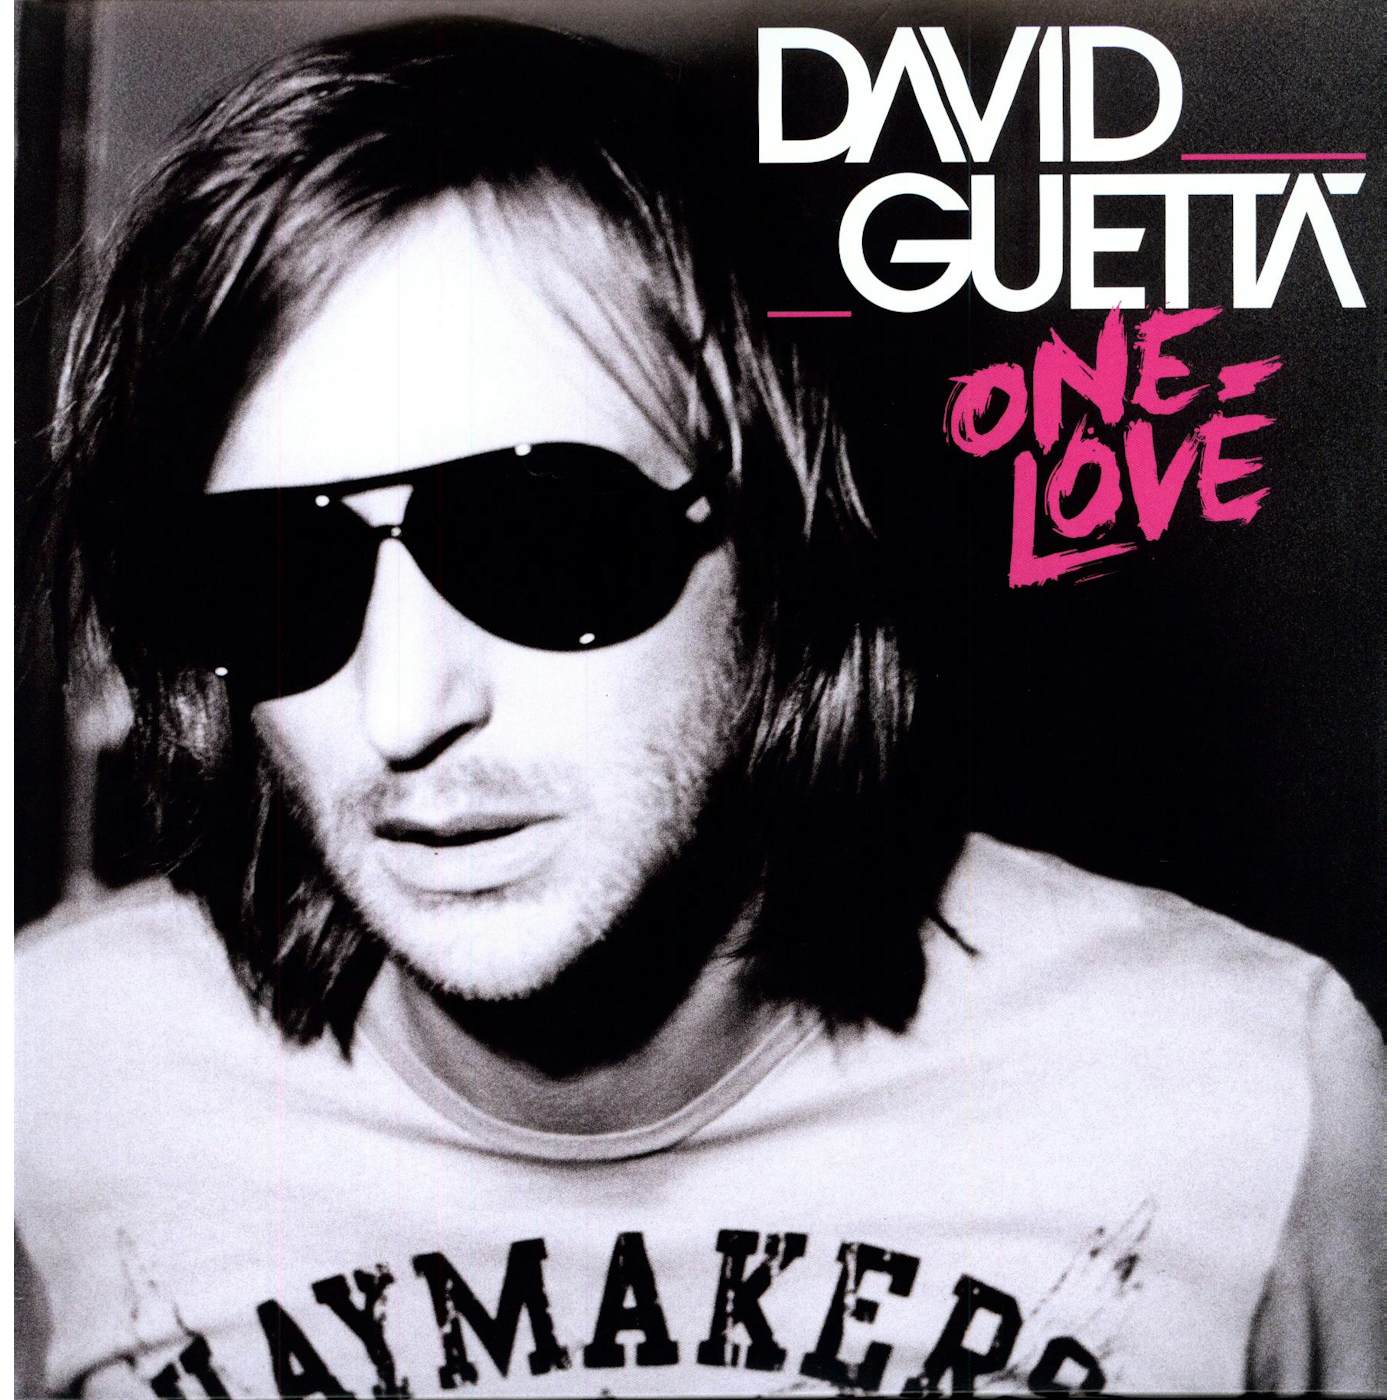 David Guetta One Love Vinyl Record